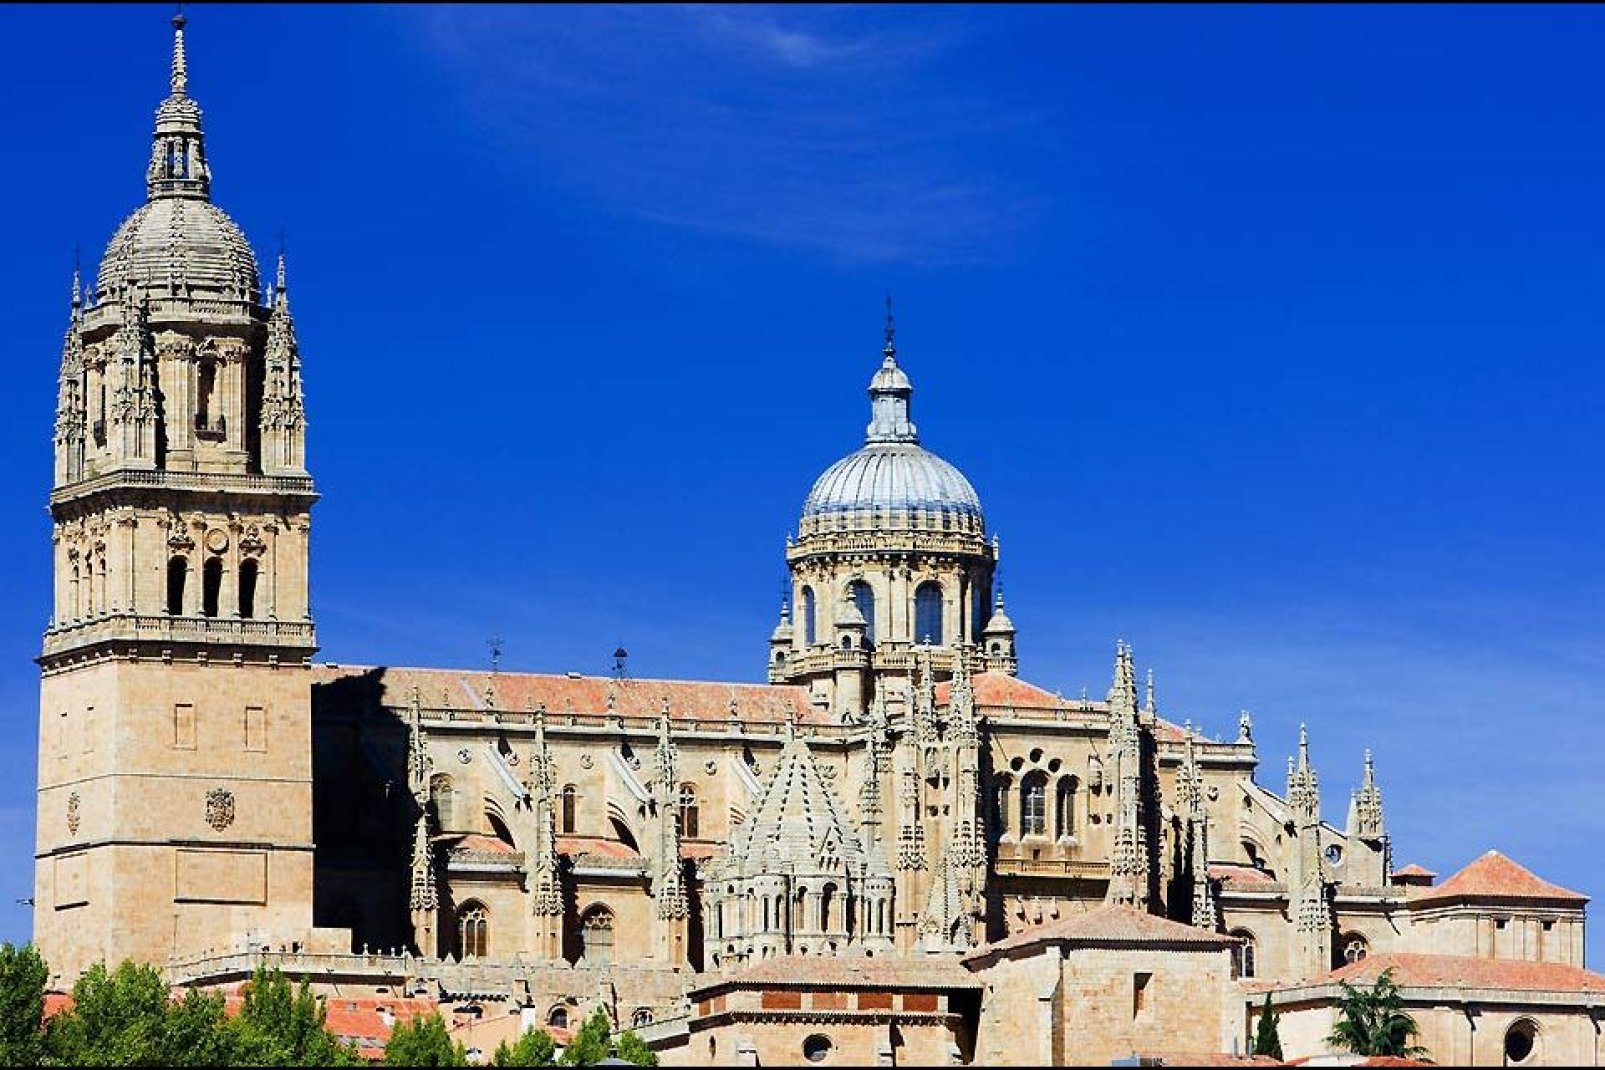 Zwei Kathedralen stehen direkt nebeneinander: Die "alte" Kathedrale stammt aus dem 12. Jahrhundert, während die sog. "Catedral nueva" im 16. Jahrhundert errichtet wurde.